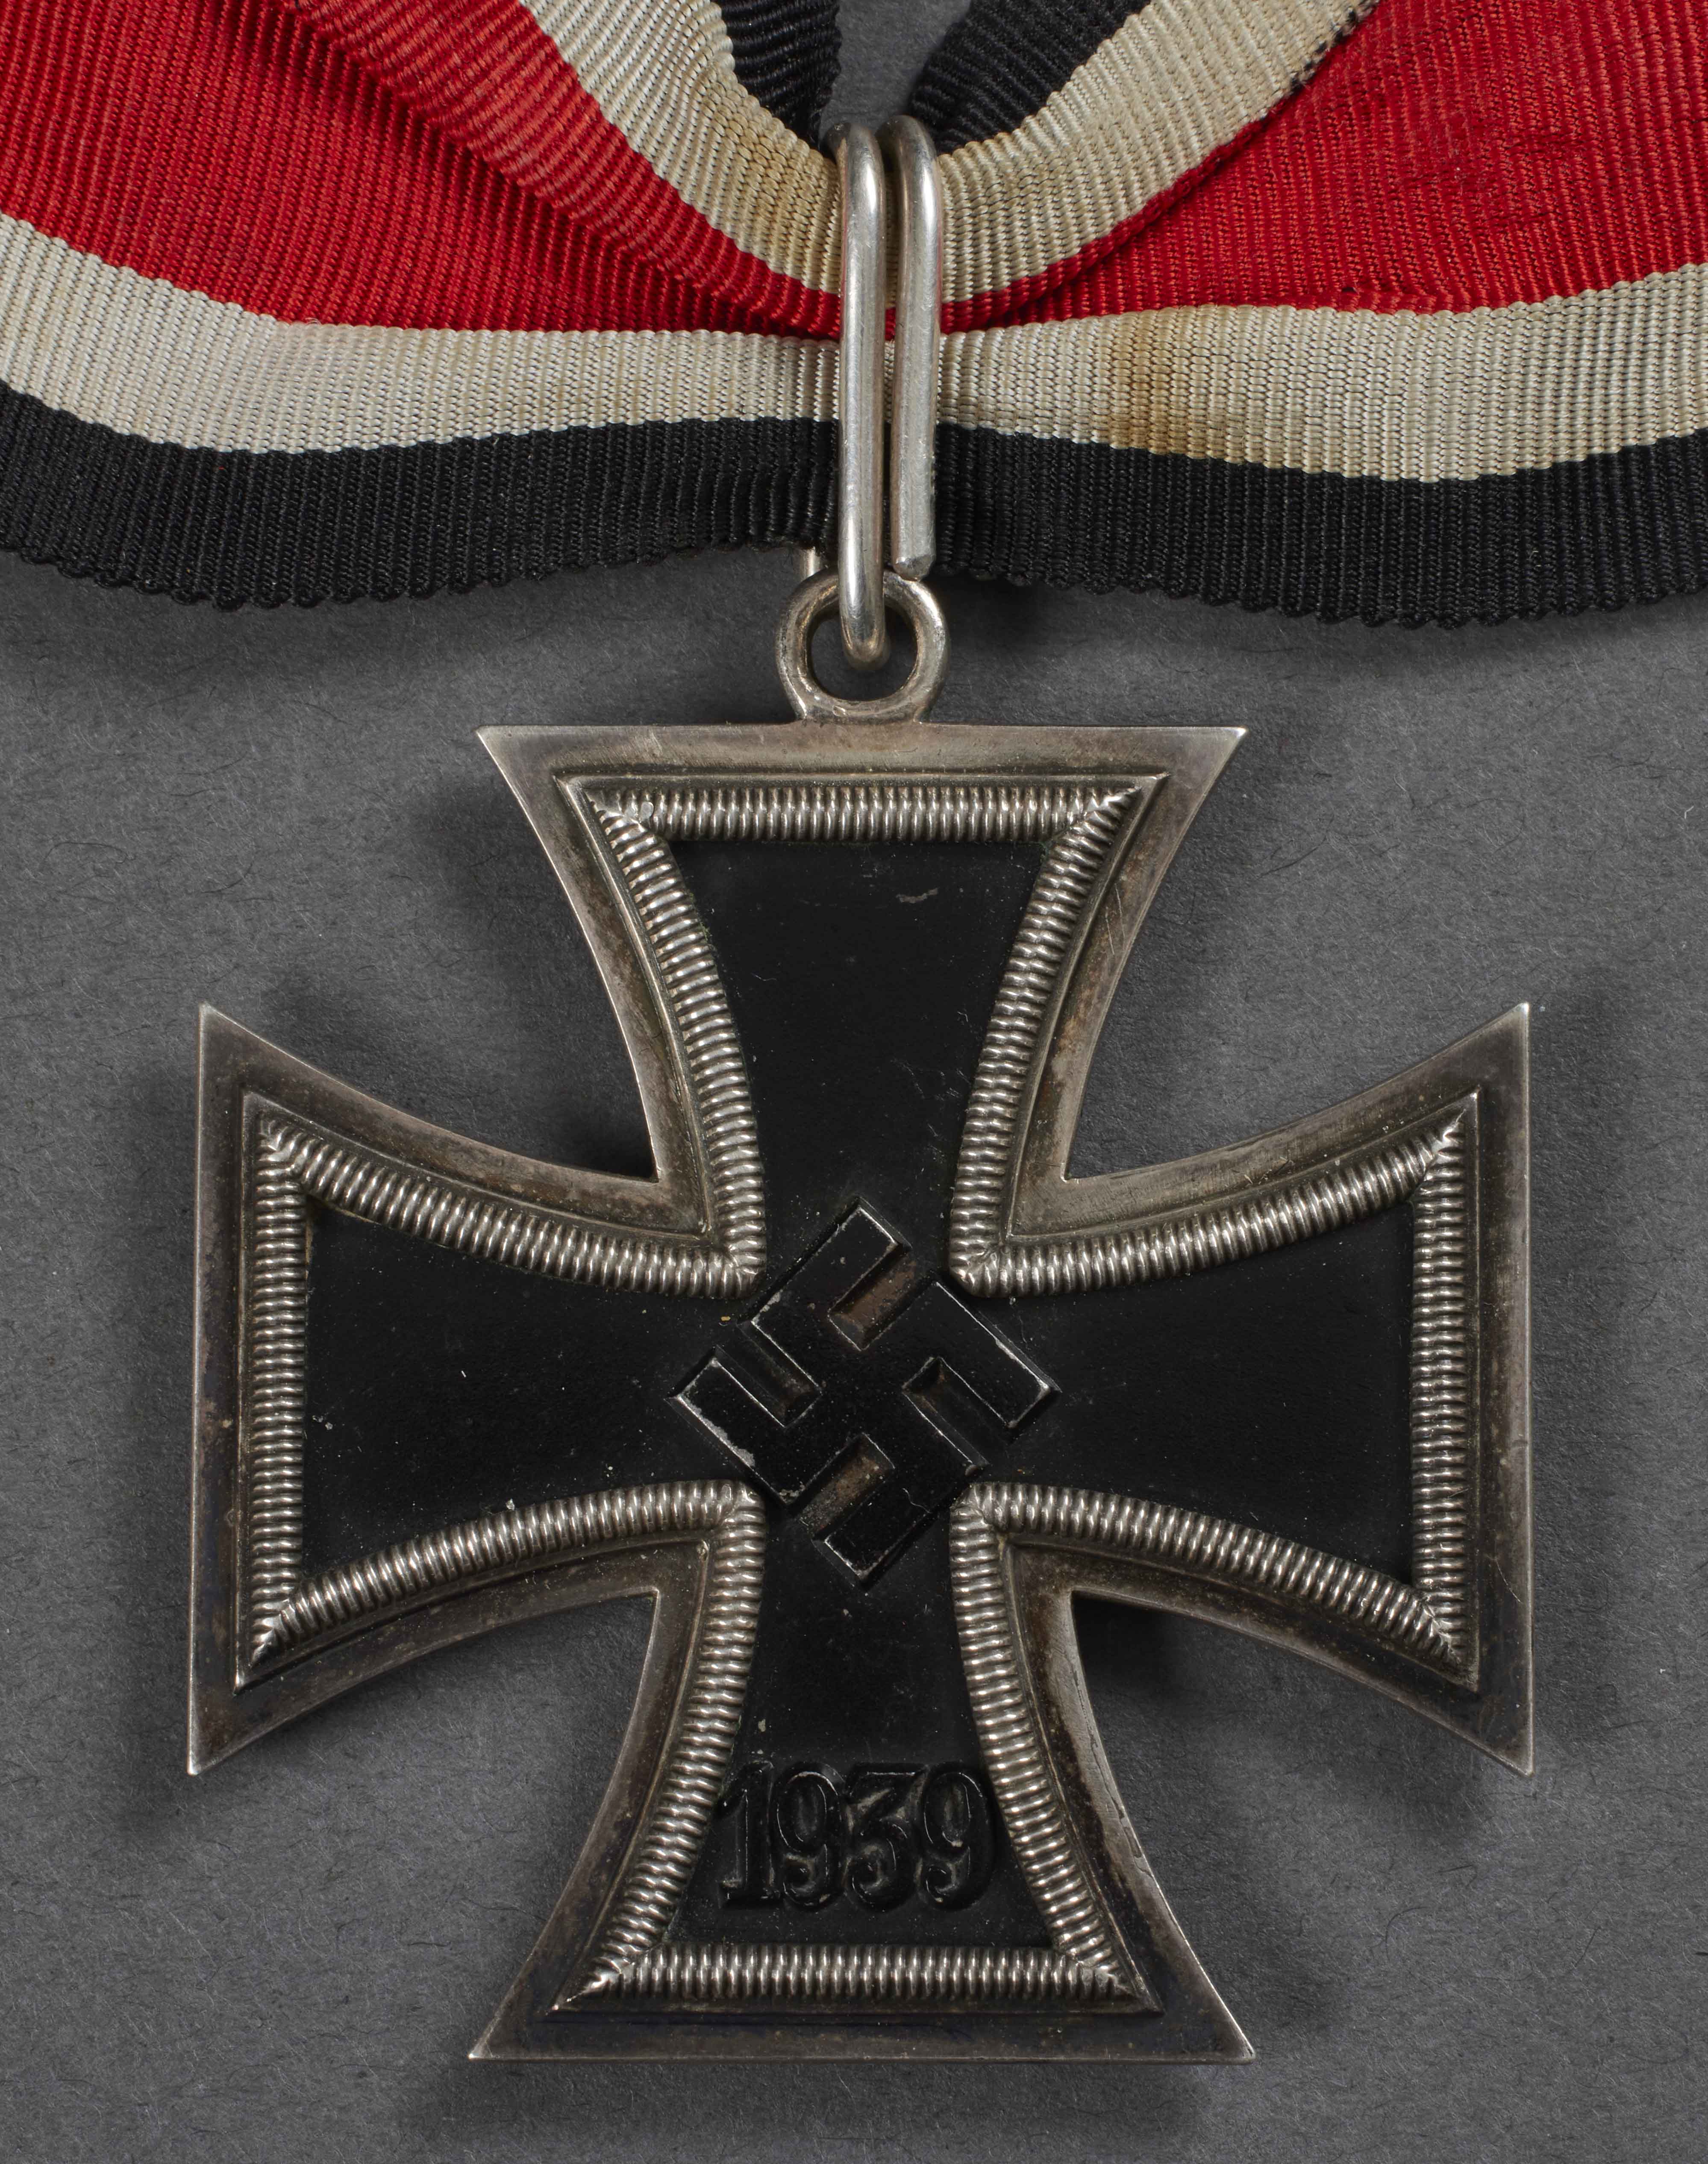 Knights Cross Iron Cross 1939 by Steinhauer & Luck 